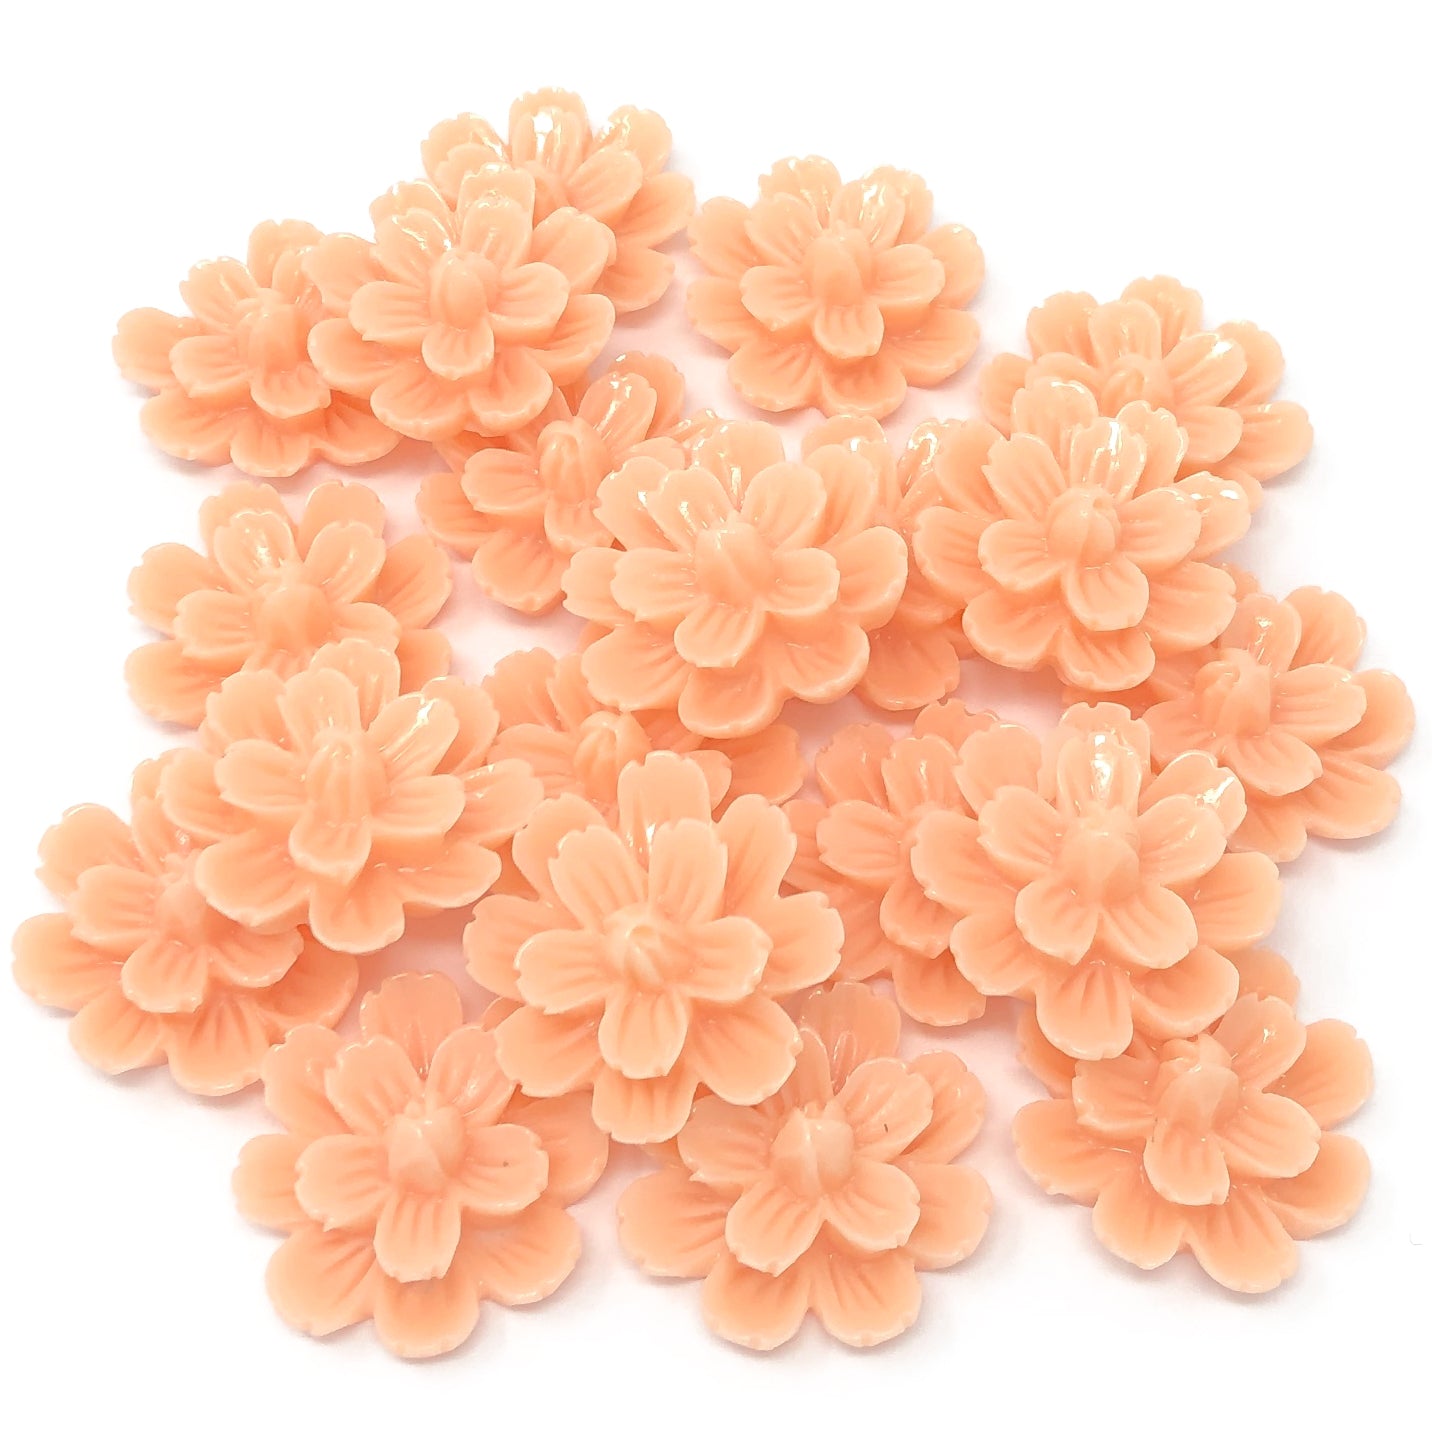 Peach 20mm Resin Flower Flatbacks - Pack of 20